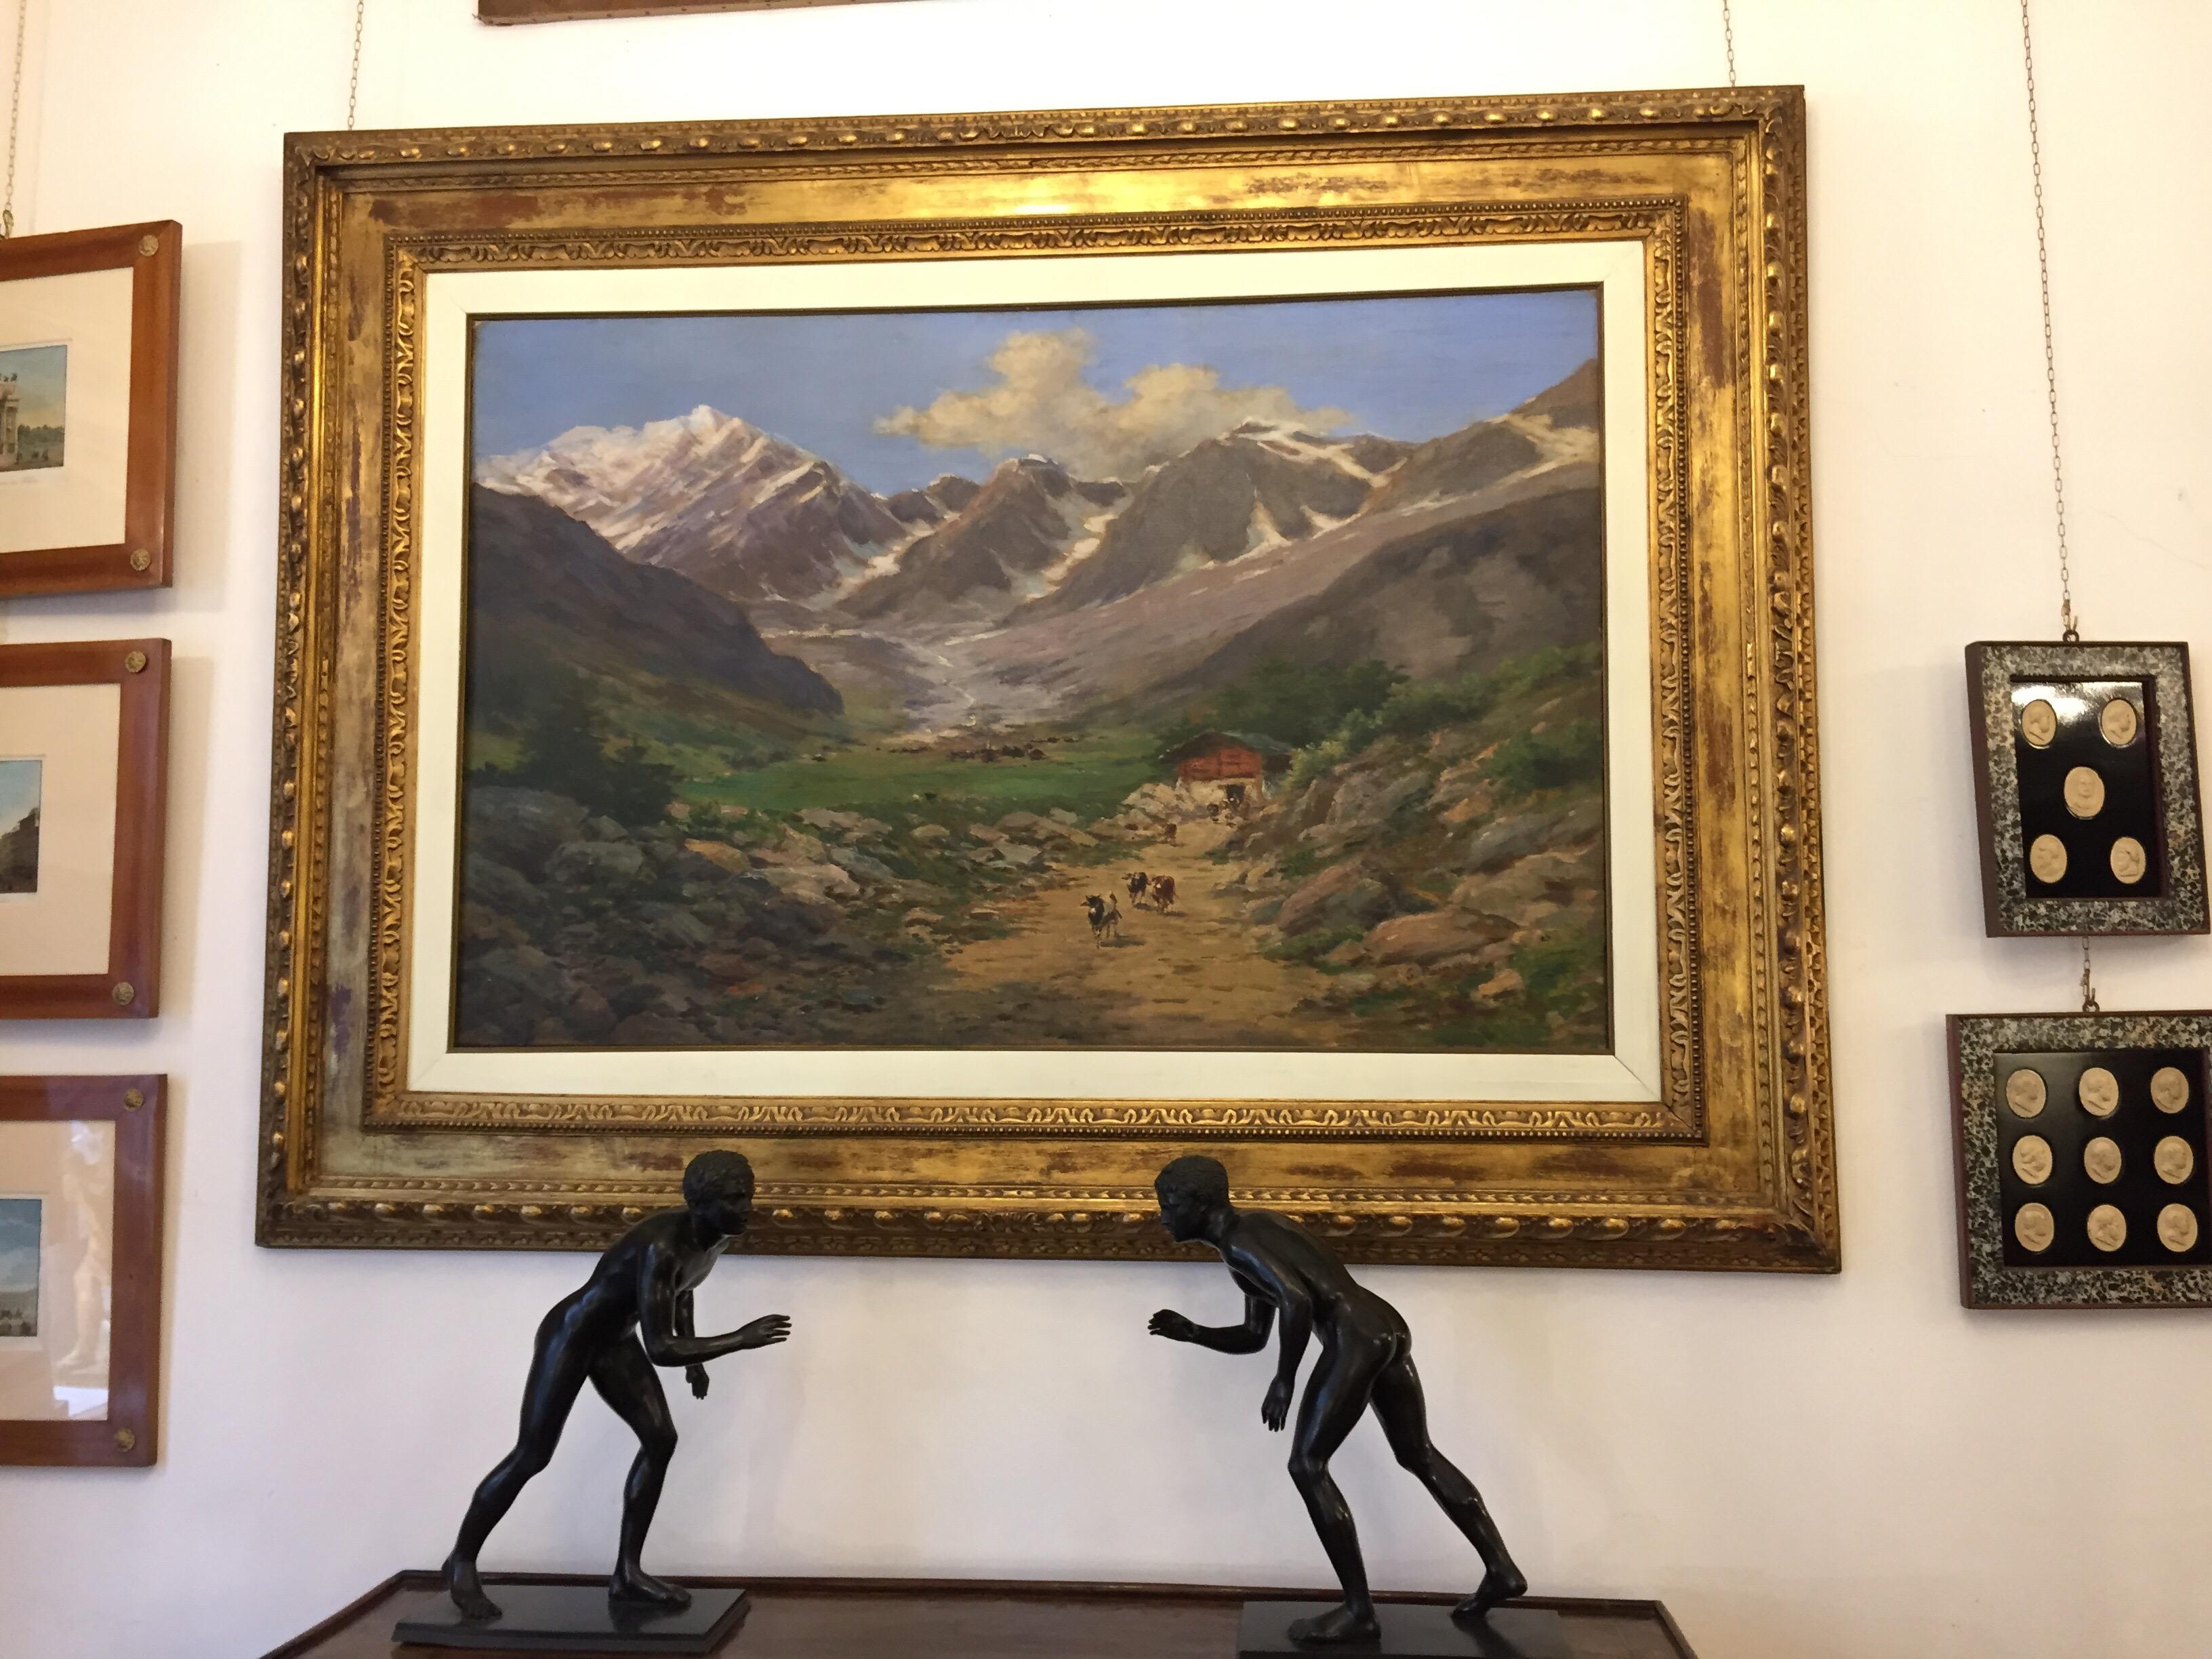 Un grand paysage de montagne, une huile sur toile du début du 20e siècle représentant un paysage de montagne, le massif du Mont Rose dans les Alpes piémontaises avec des montagnes enneigées à l'arrière-plan et une ferme rurale et quelques vaches au